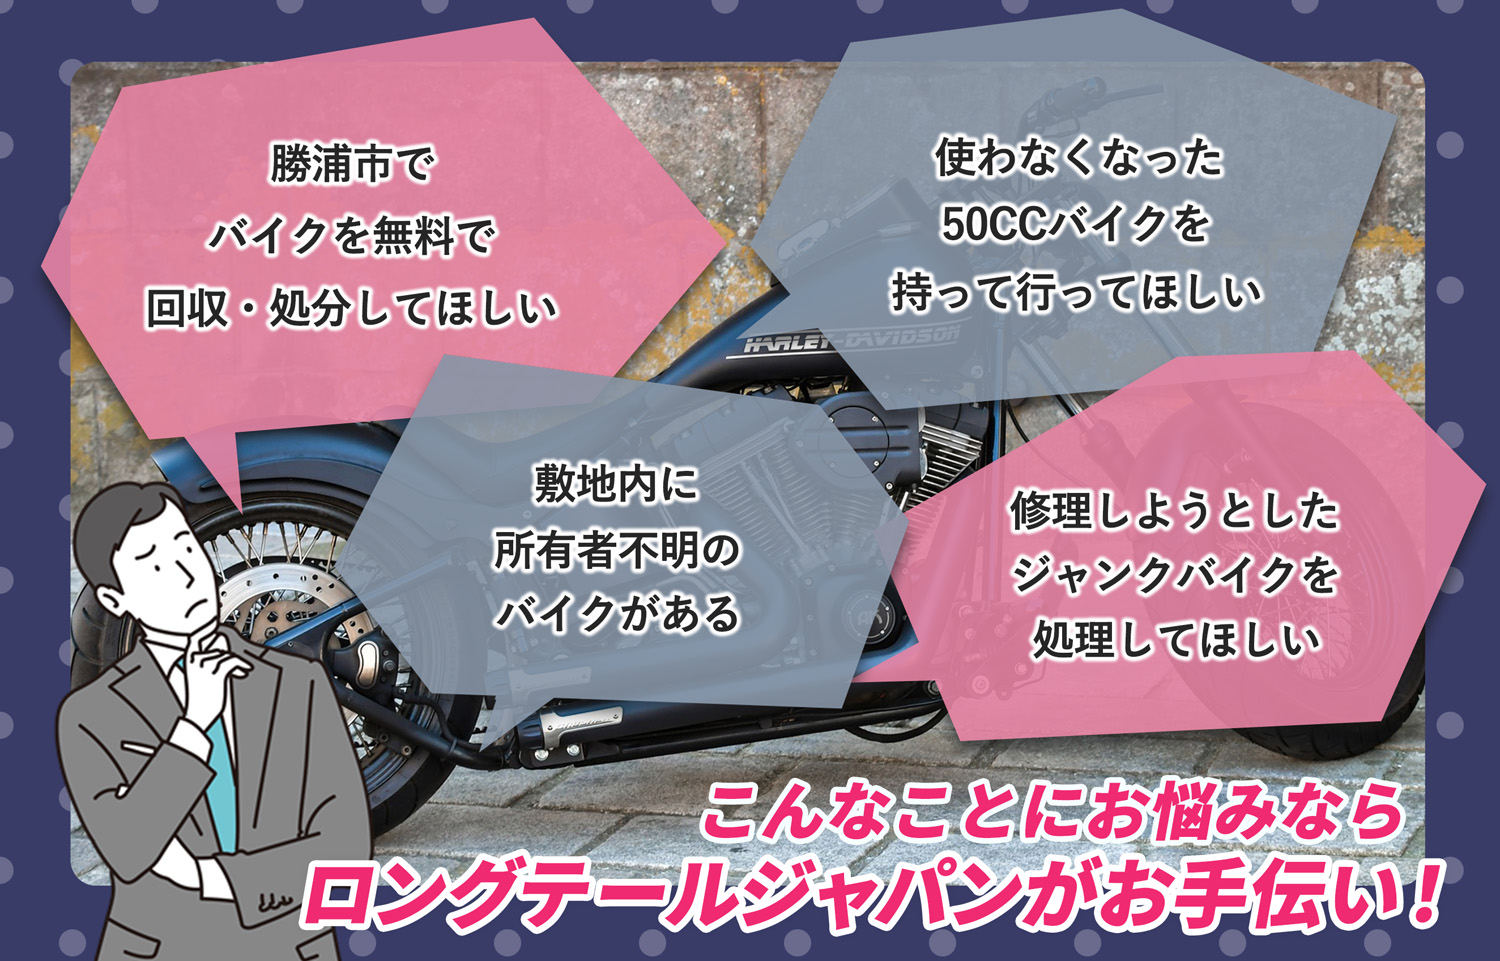 勝浦市でこんなバイクの処分にお困りでしたらバイク無料回収処分隊がお手伝いいたします。